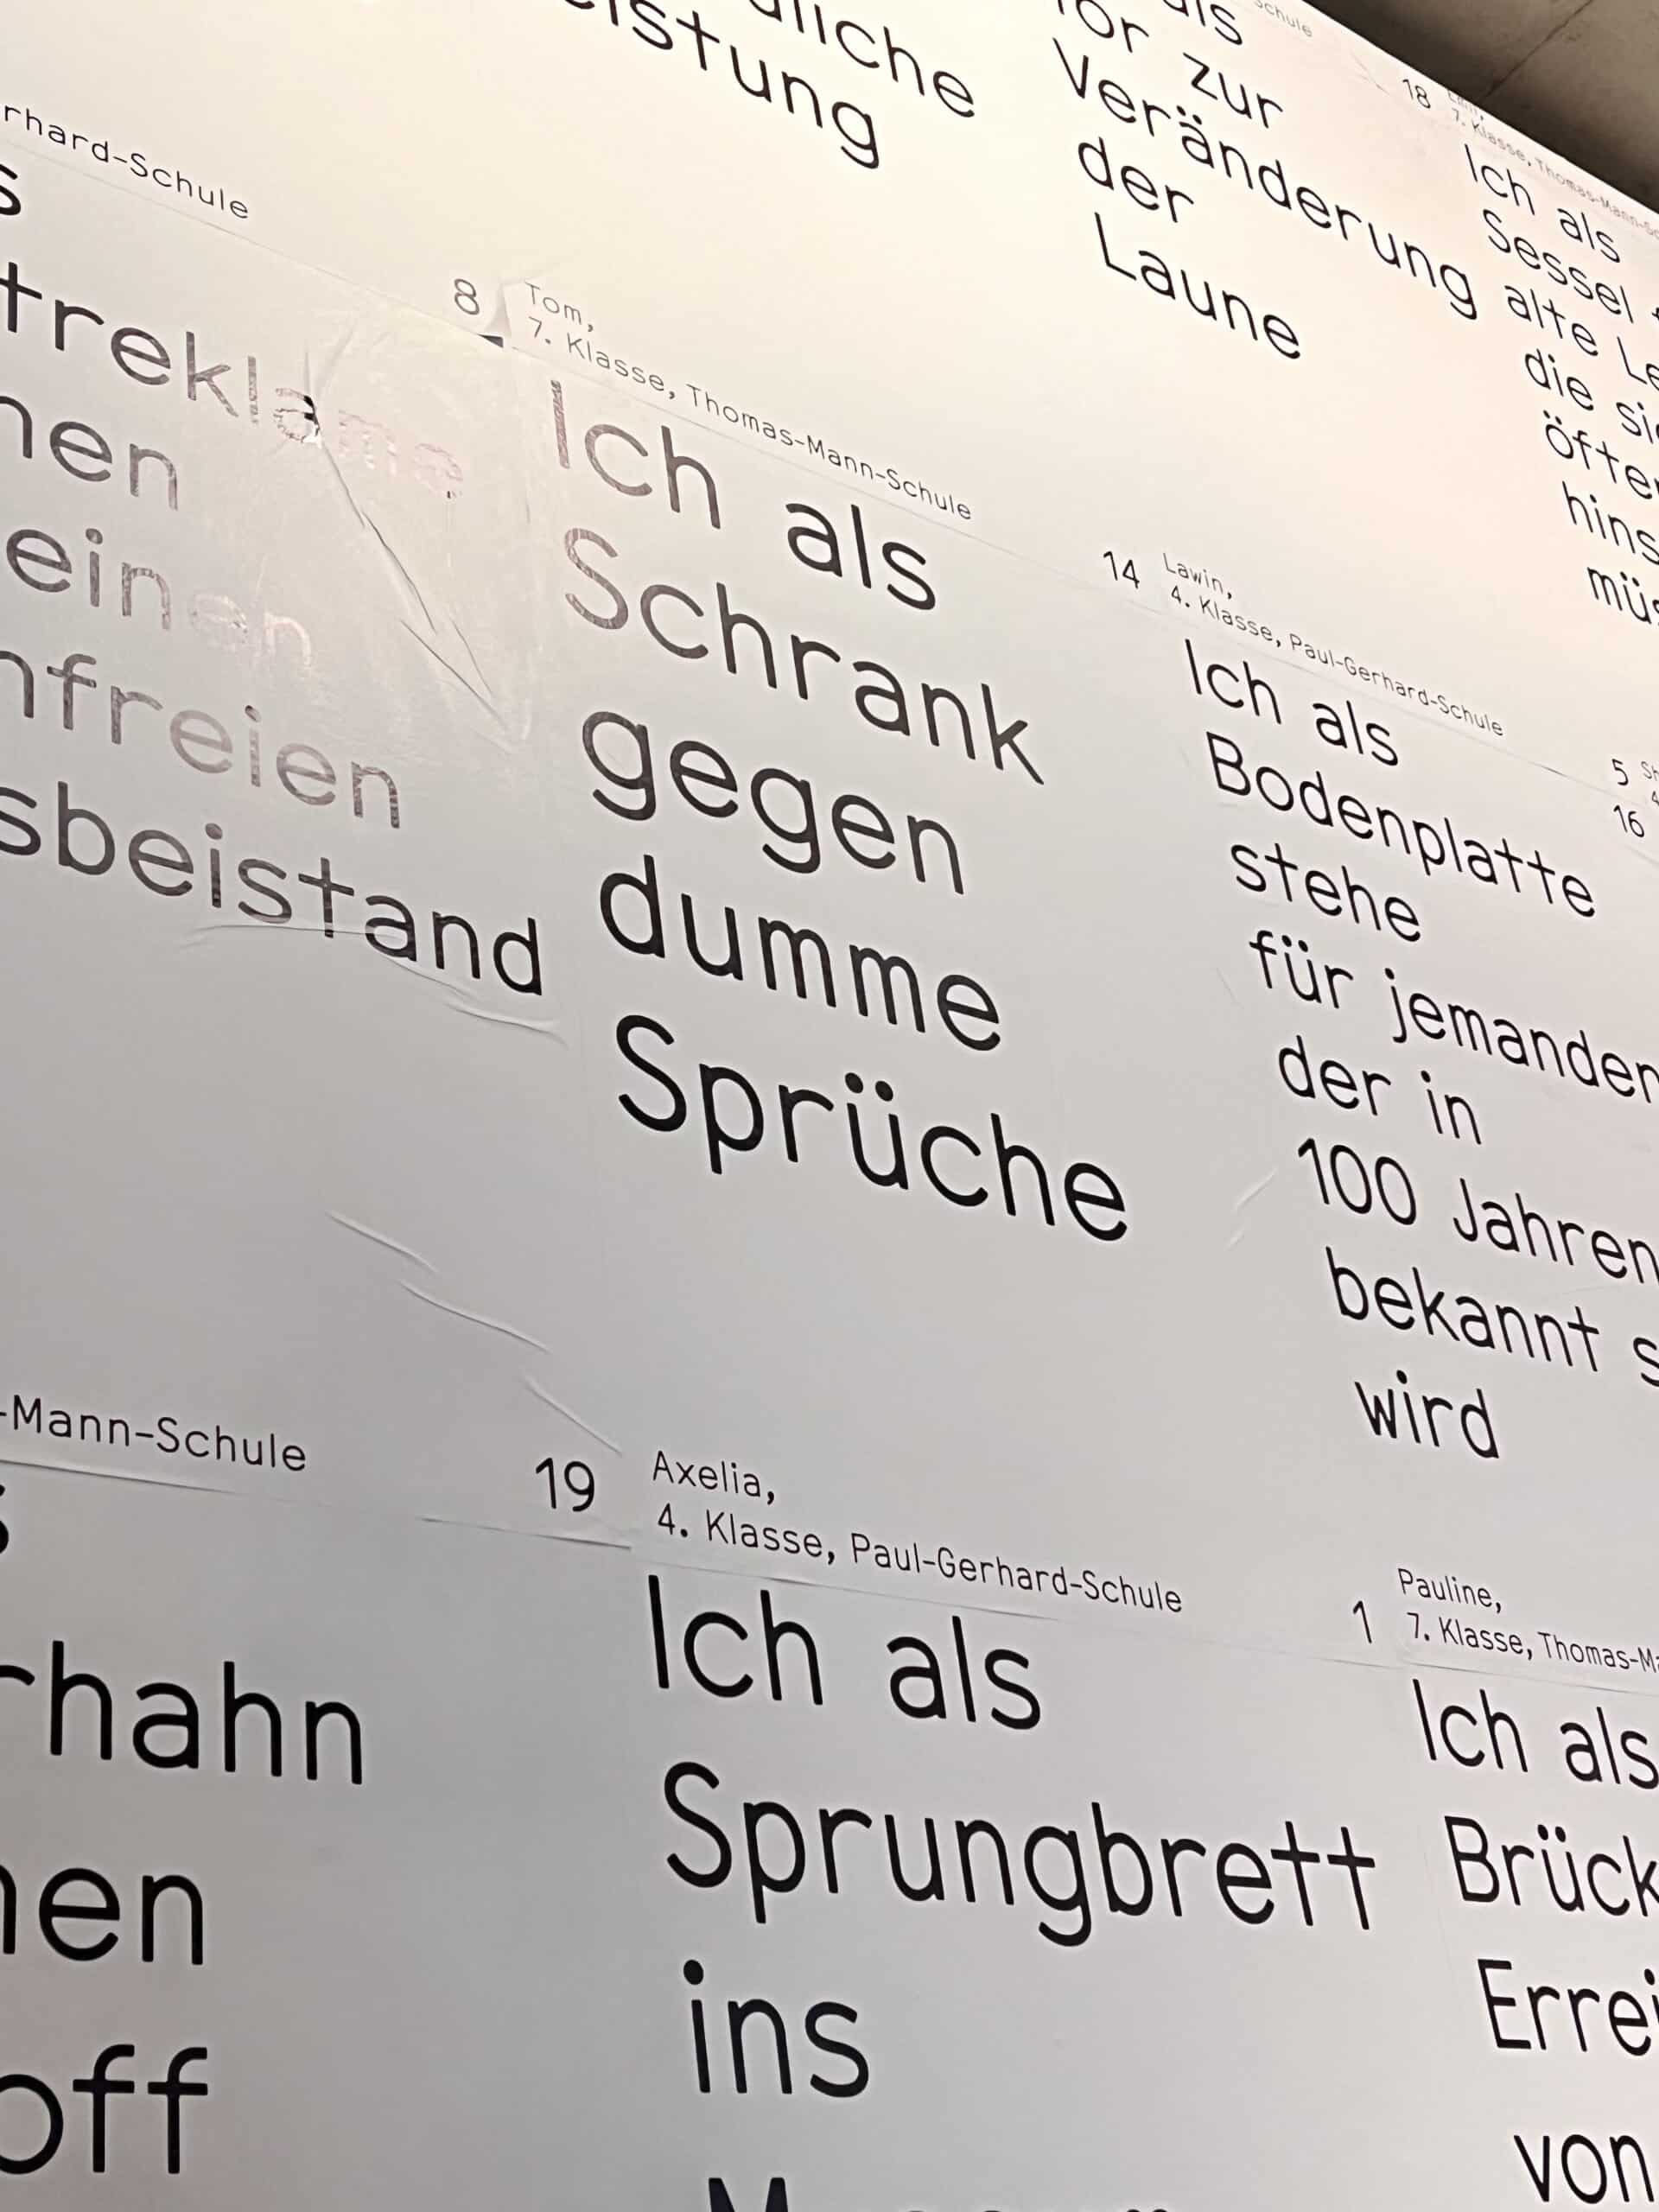 Hello Lübeck - die neue Ausstellung in der Kunsthalle St. Annen